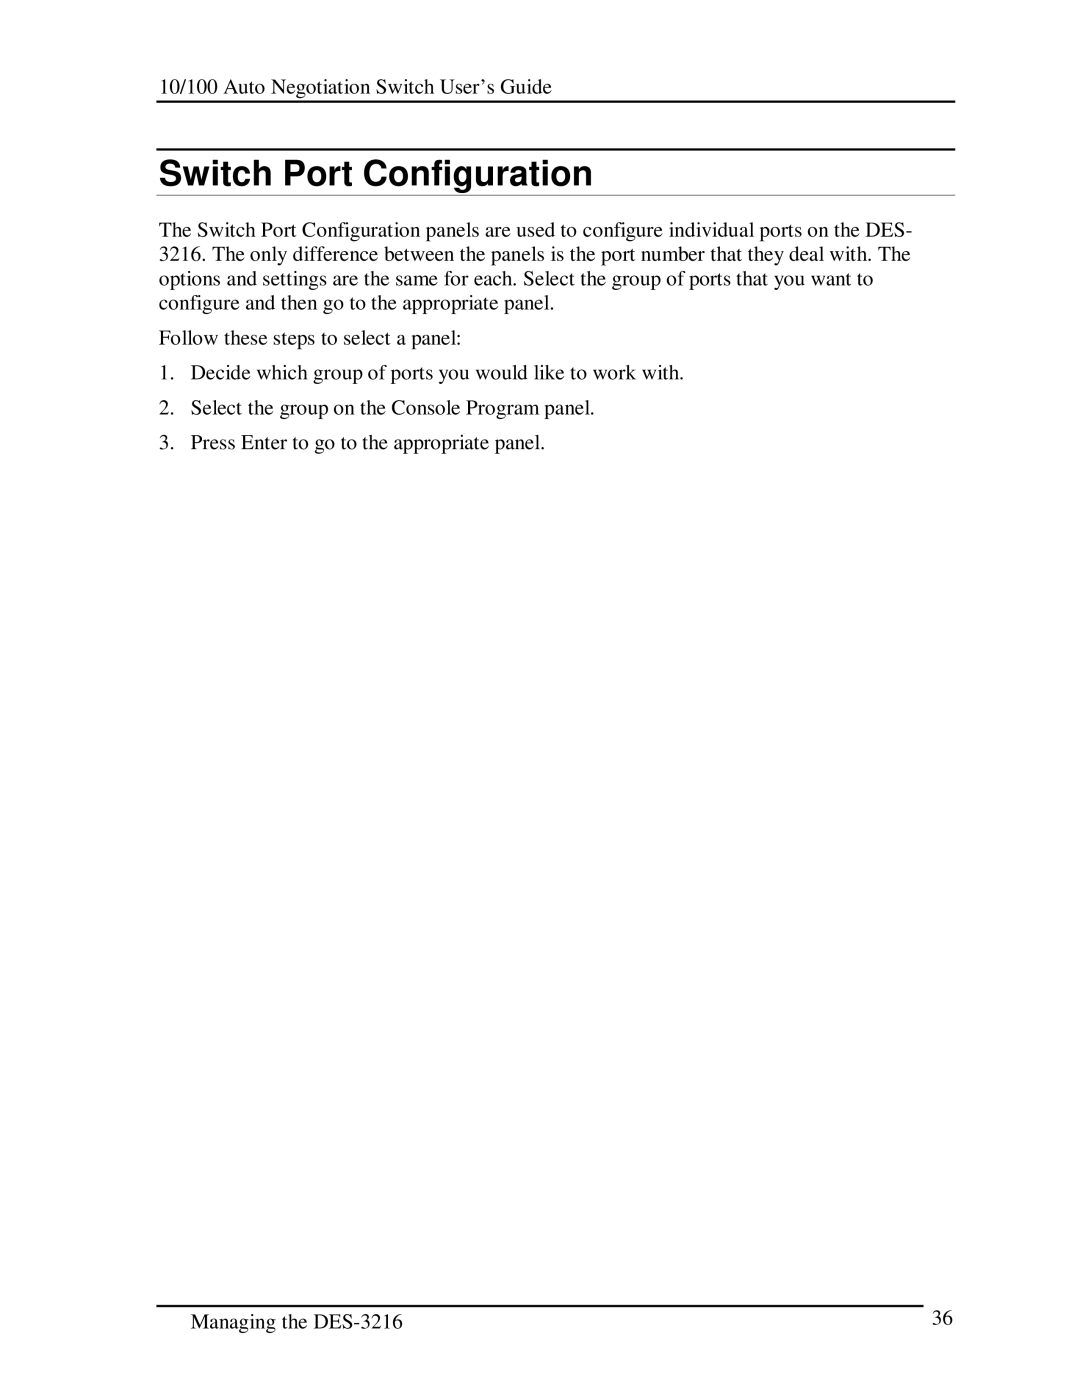 D-Link DES-3216 manual Switch Port Configuration 